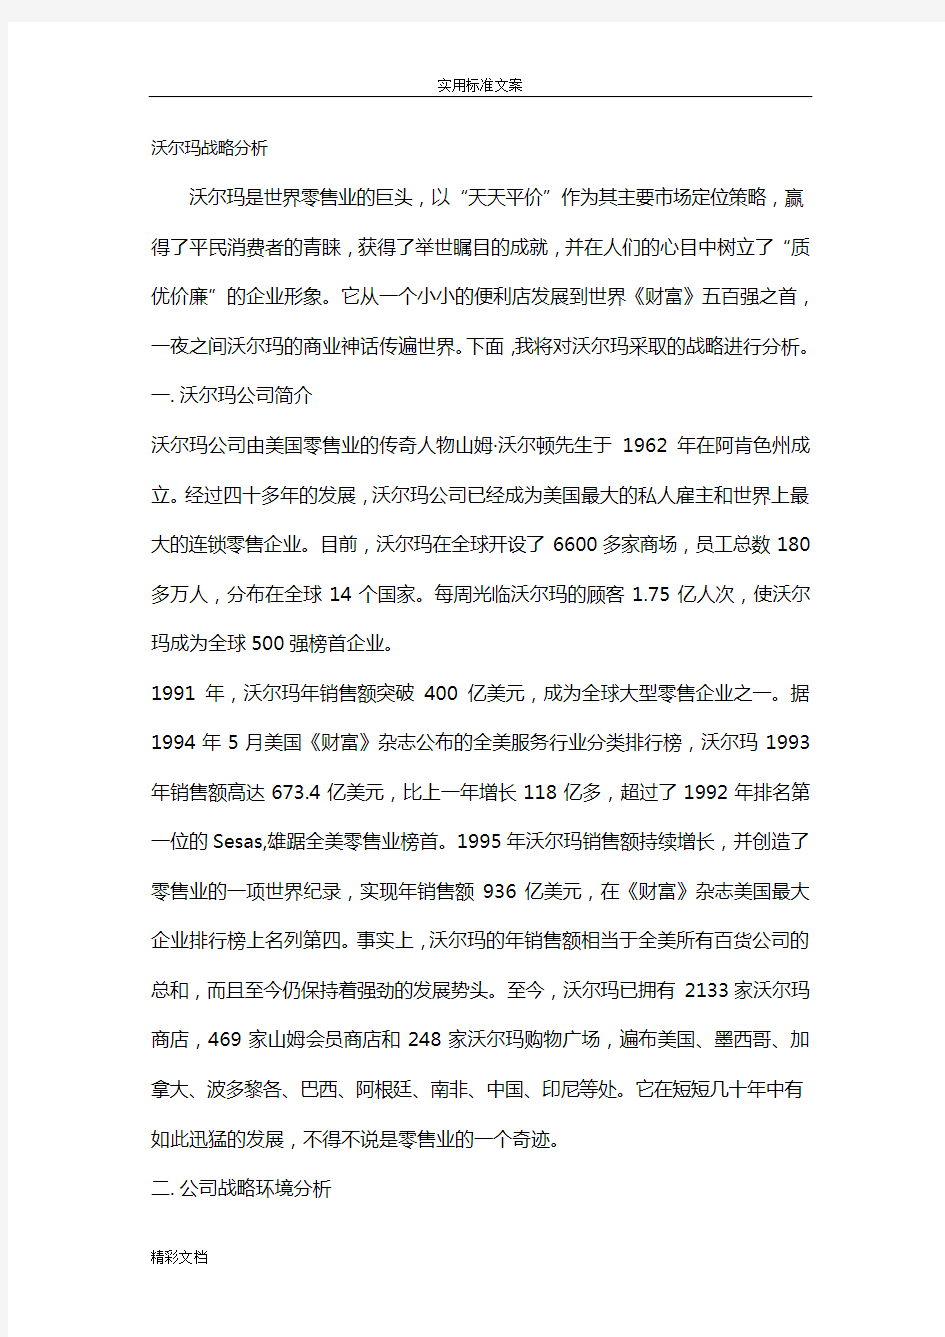 沃尔玛战略分析报告报告材料(中文版)